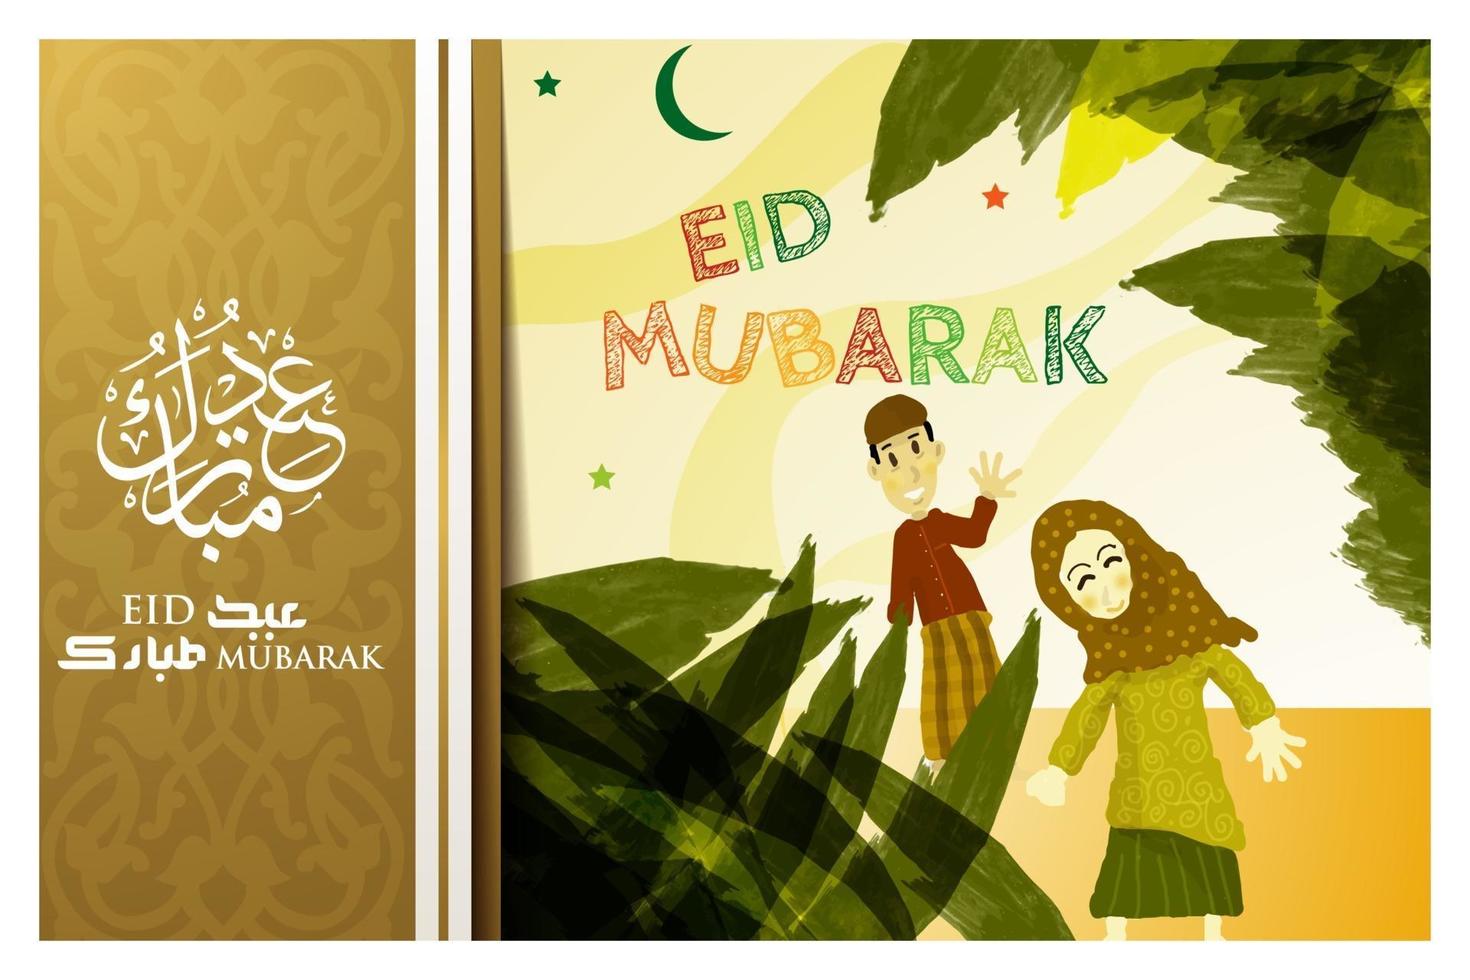 Eid mubarak saludo diseño de vector de fondo de ilustración islámica con hermosa caligrafía árabe. traducción del texto bendito festival